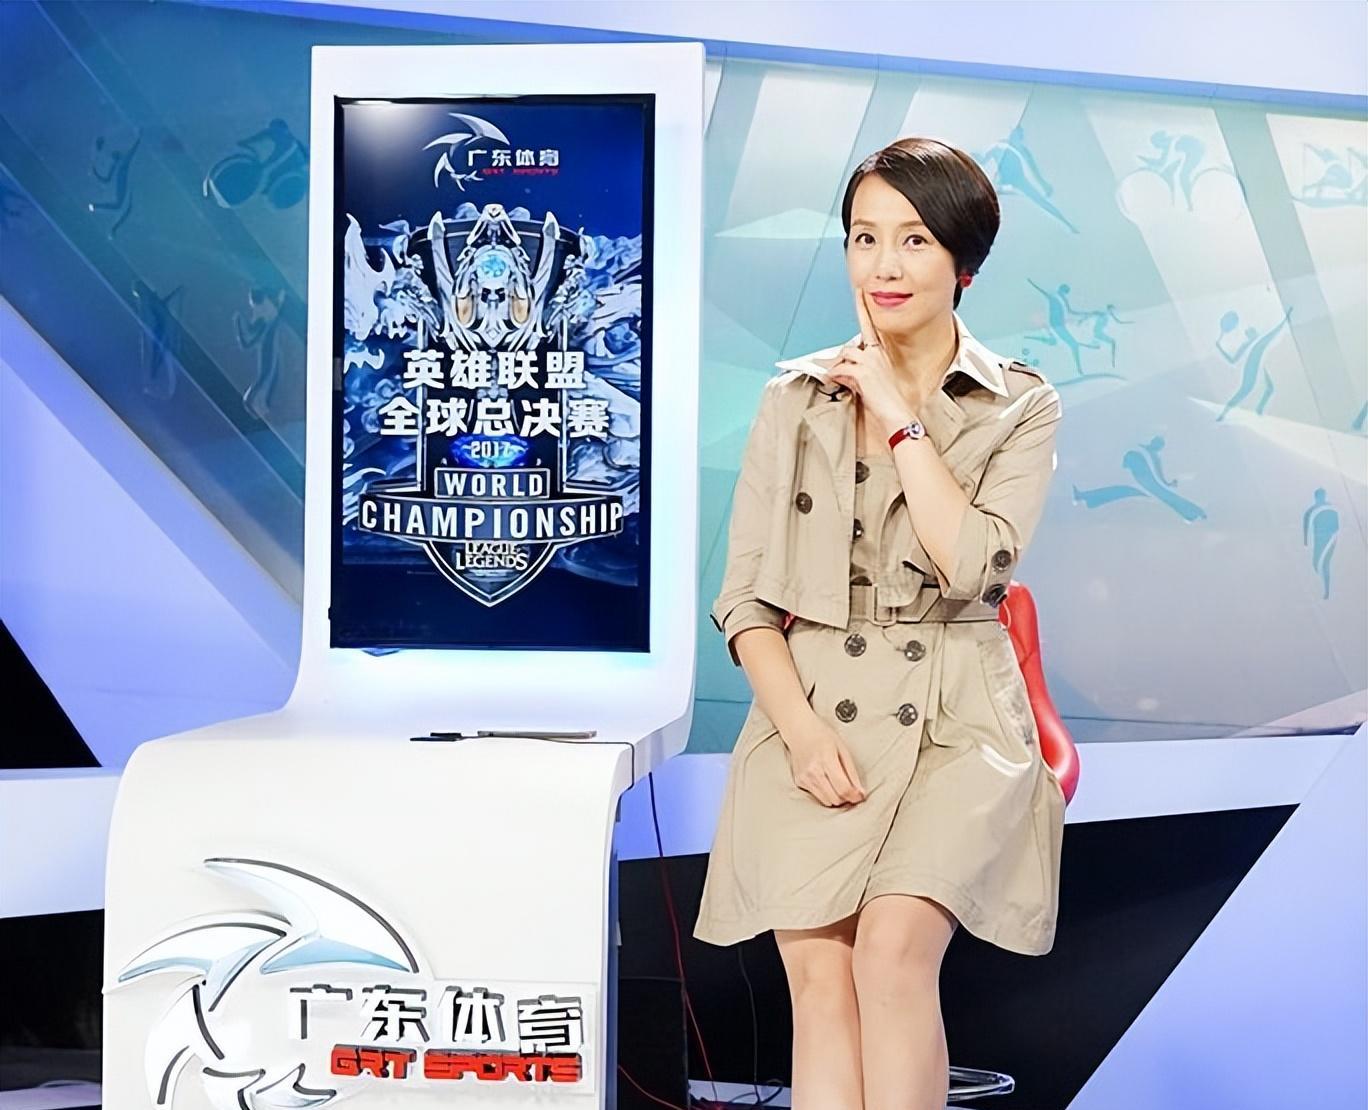 何辉也把主要精力放在网络直播当中,郑怡虽然还没有离开广东体育频道